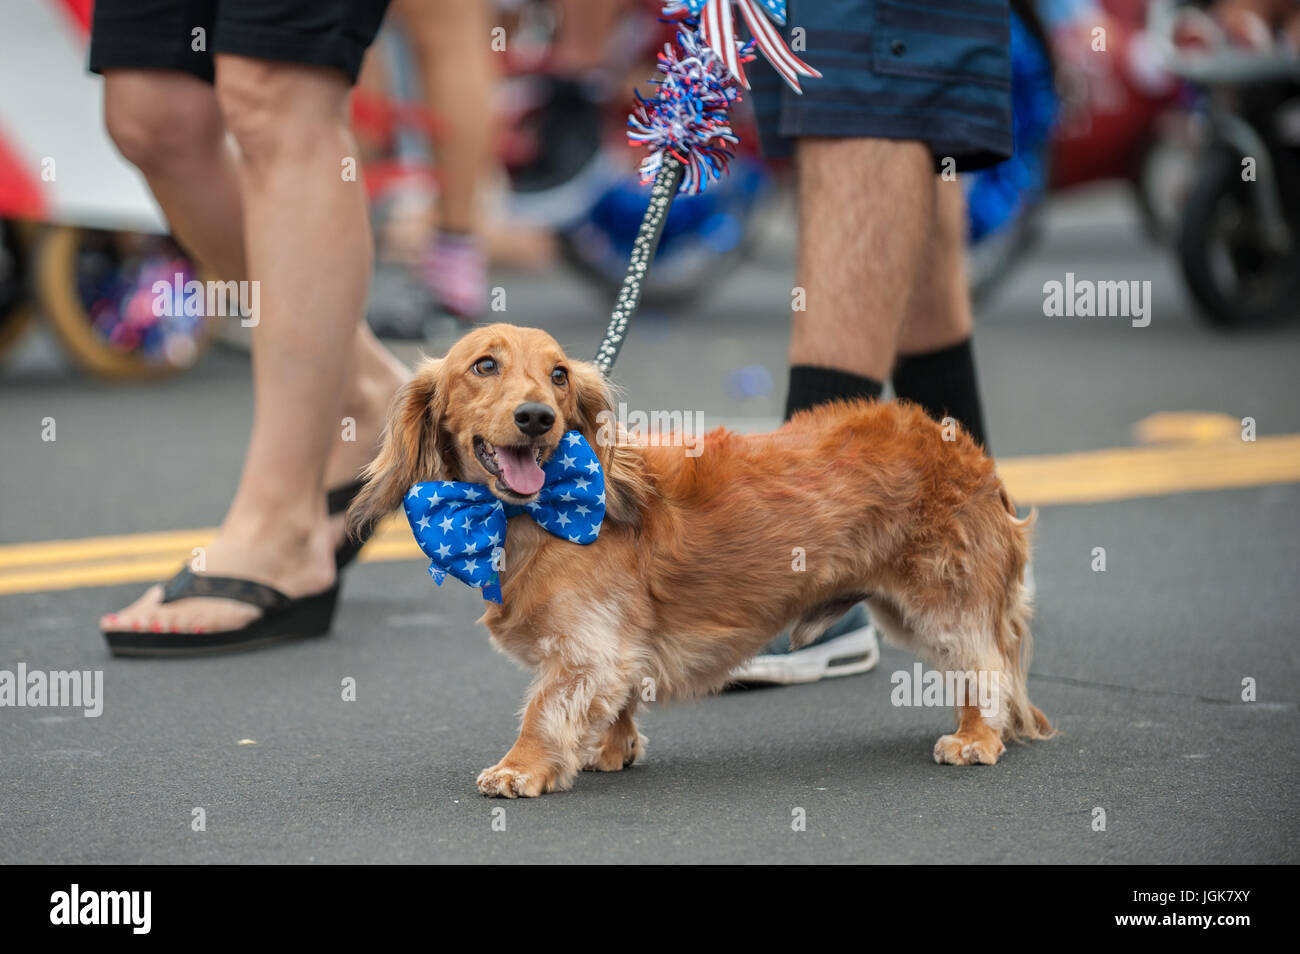 Patriottica cane bassotto camminando sulla street parade con stelle e strisce bow tie attorno al collo. Foto Stock